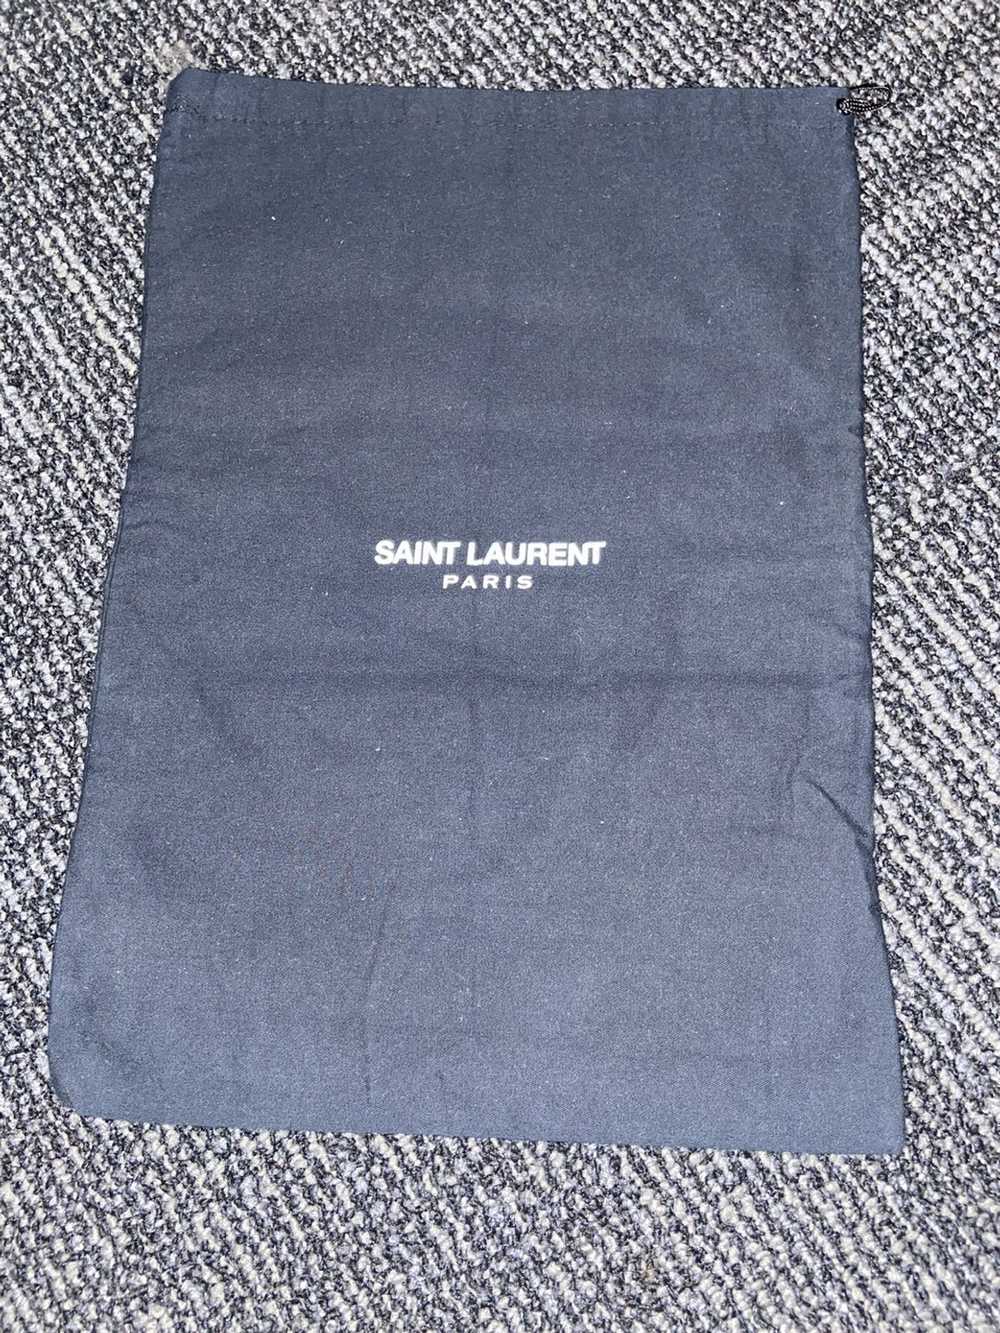 Yves Saint Laurent Saint Laurent Court Classics - image 6